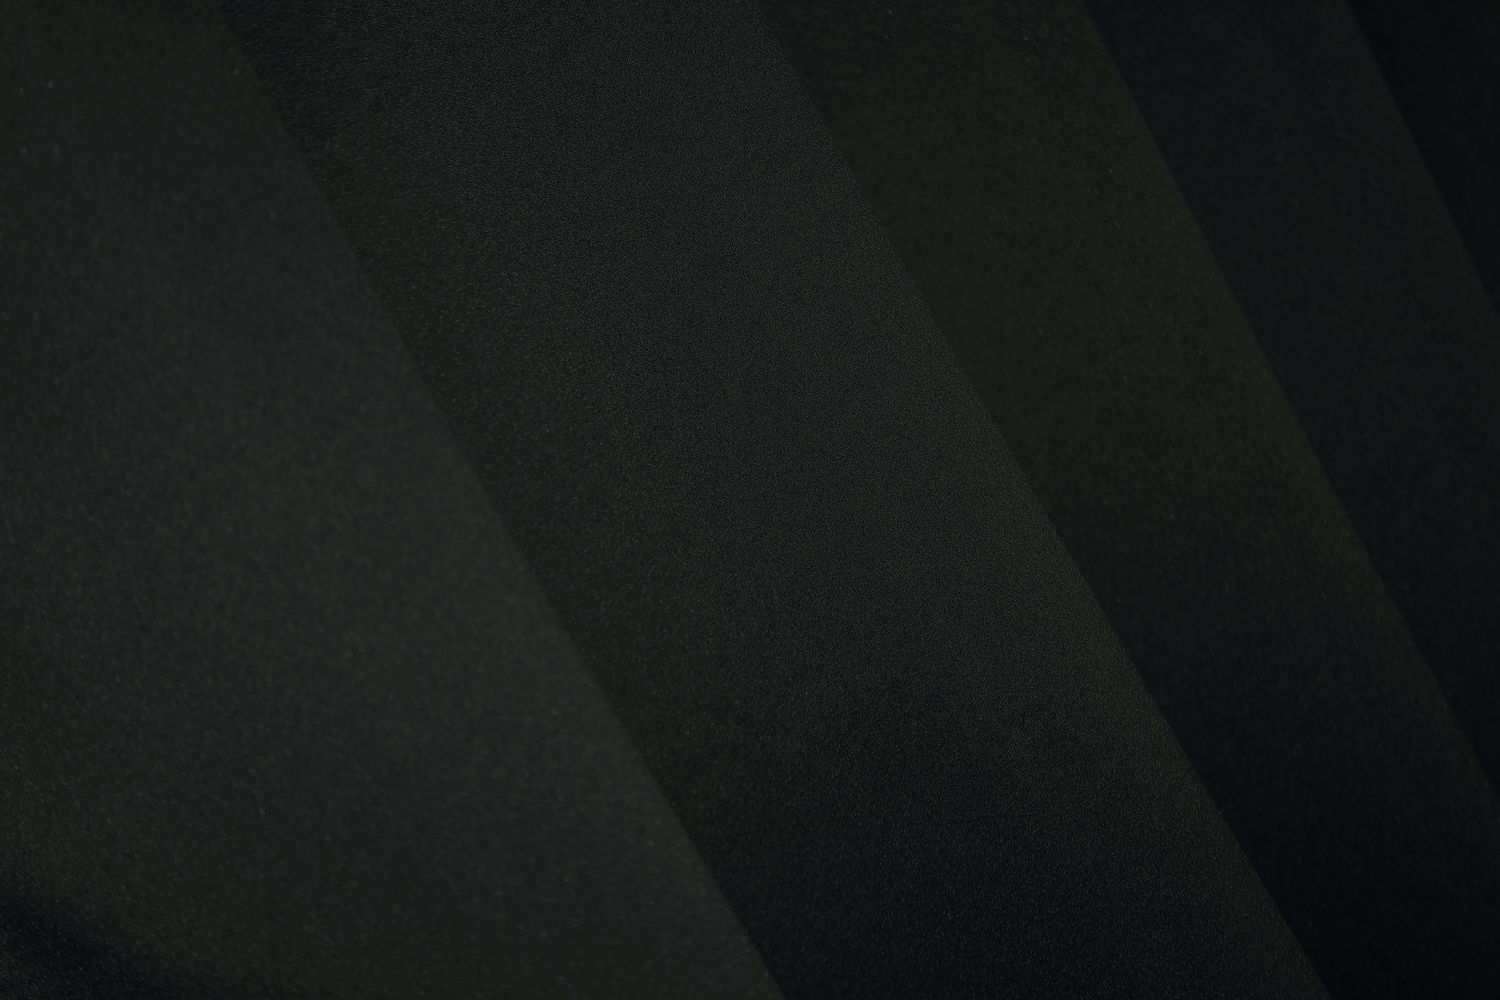 Комплект штор из ткани блэкаут, коллекция "Midnight" цвет черный 1165ш, Черный, Комплект коротких штор (2шт. 1,4х1,7м.), Классические, Короткие, 1,4 м., 1,7 м., 140, 170, 1,5 - 2,5 м., В комплекте 2 шт., Тесьма